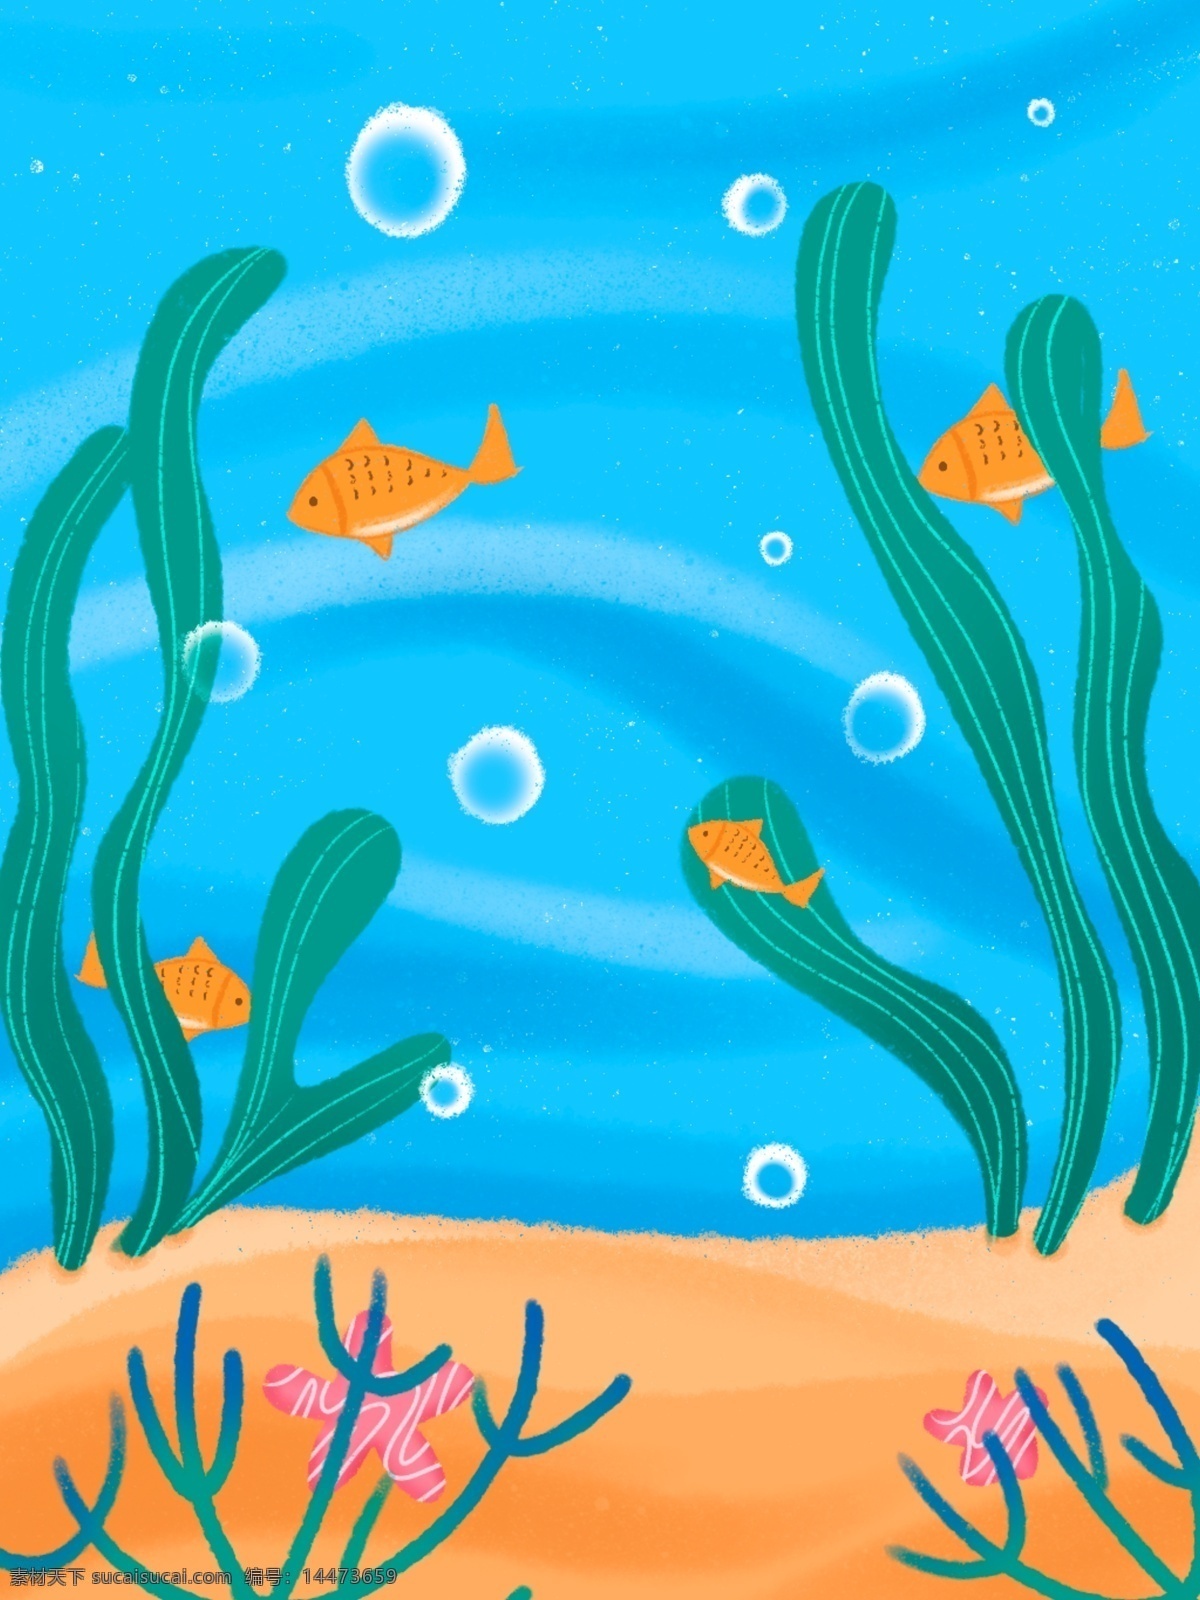 航海 系列 背景 海底 世界 原创 海草 鱼 海星 手绘 噪点 杂点